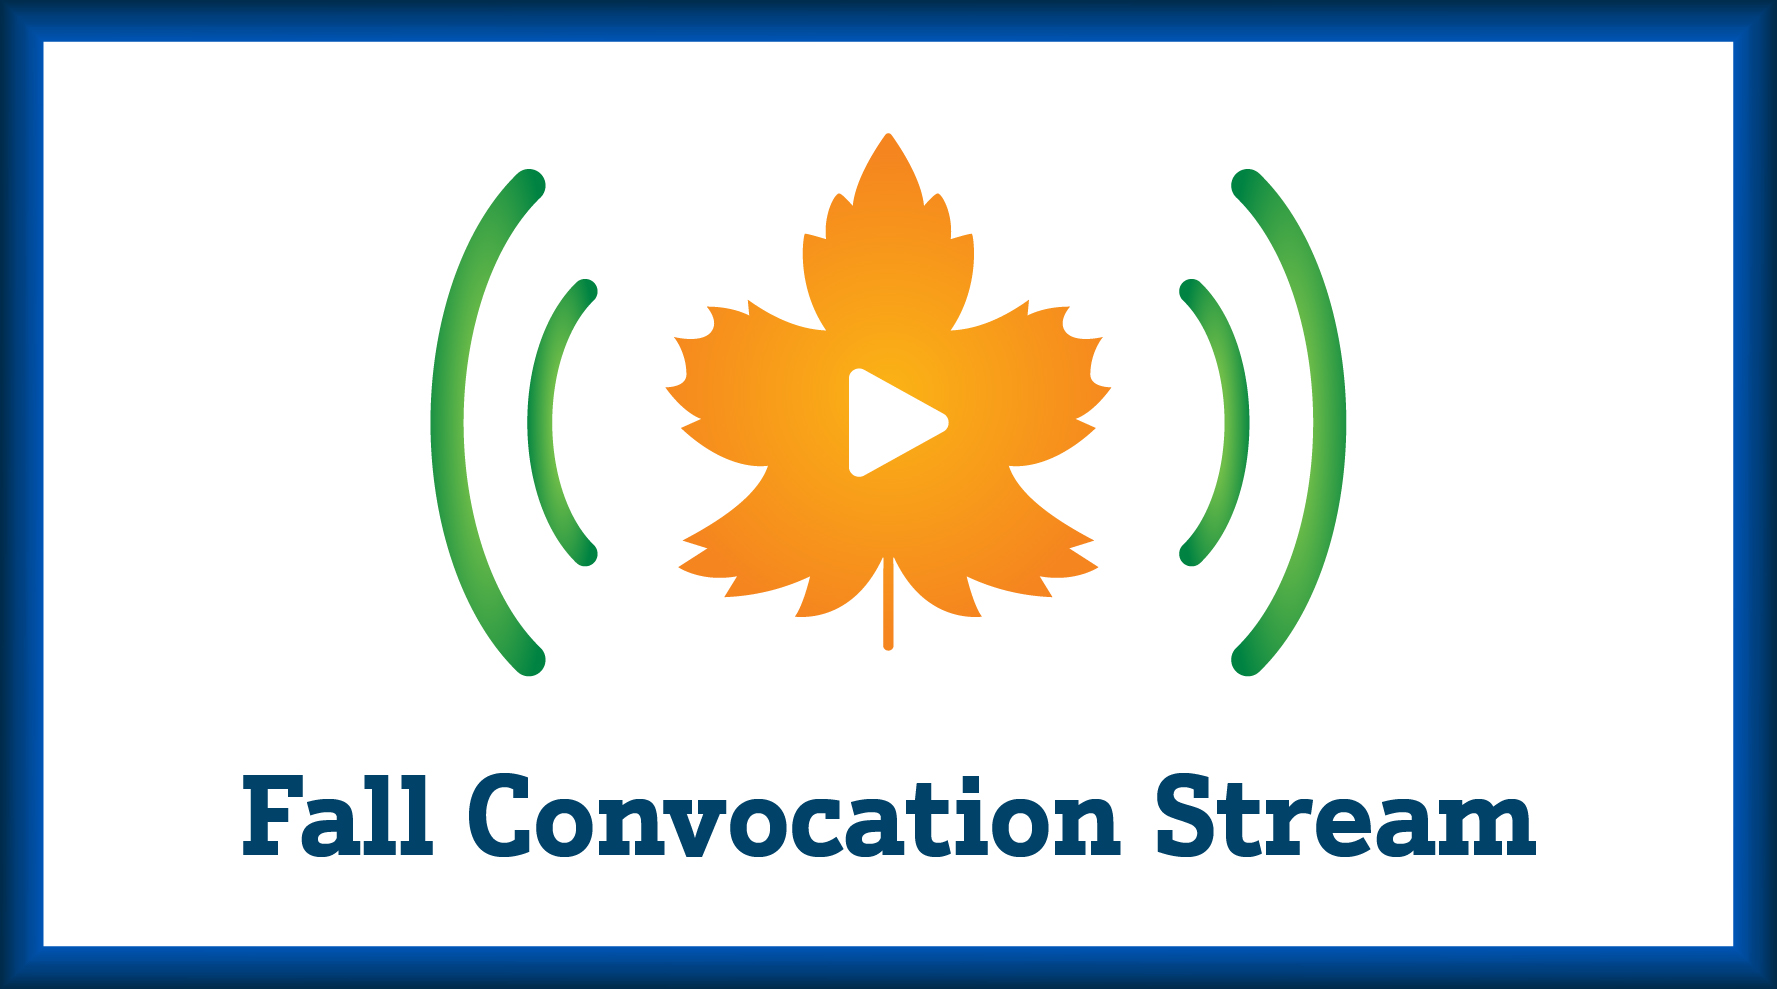 Fall Convocation Stream